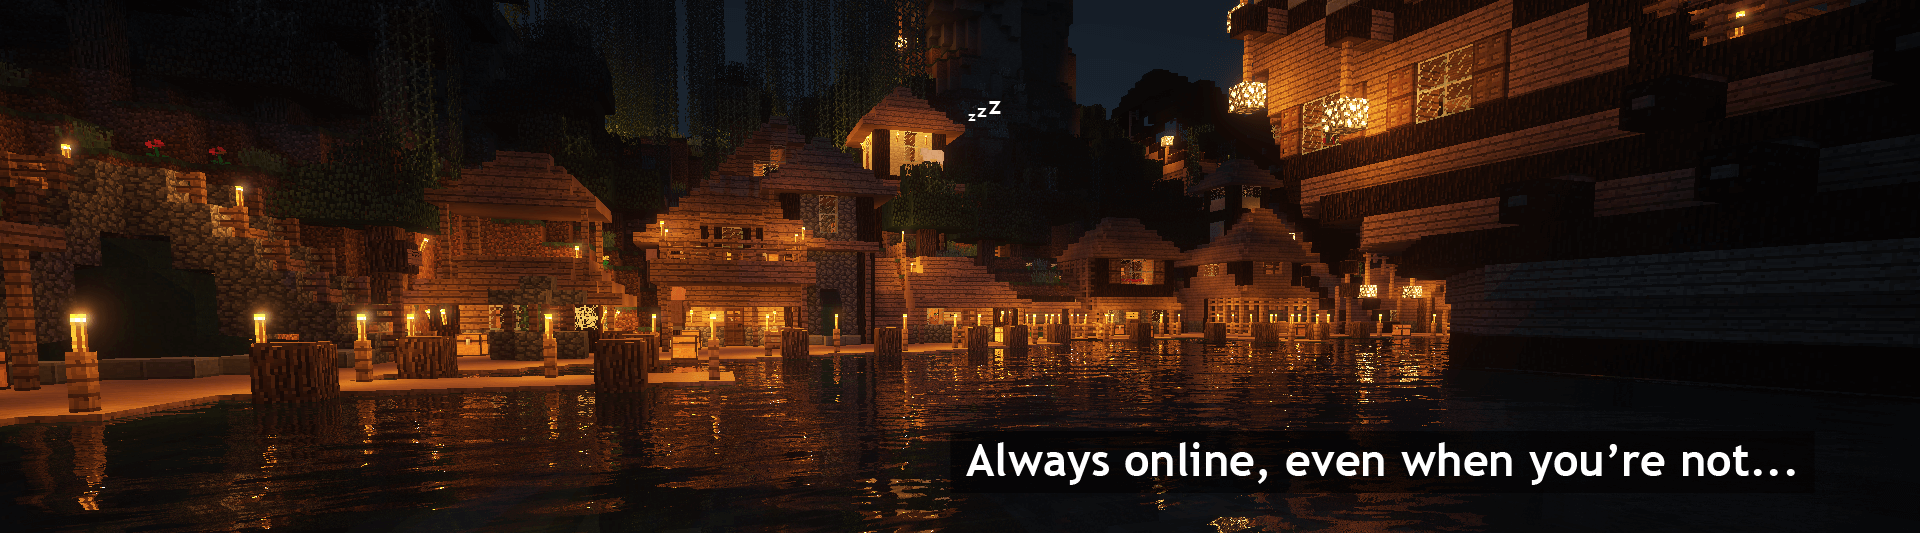 Minecraft town at night. Server is always online 24/7